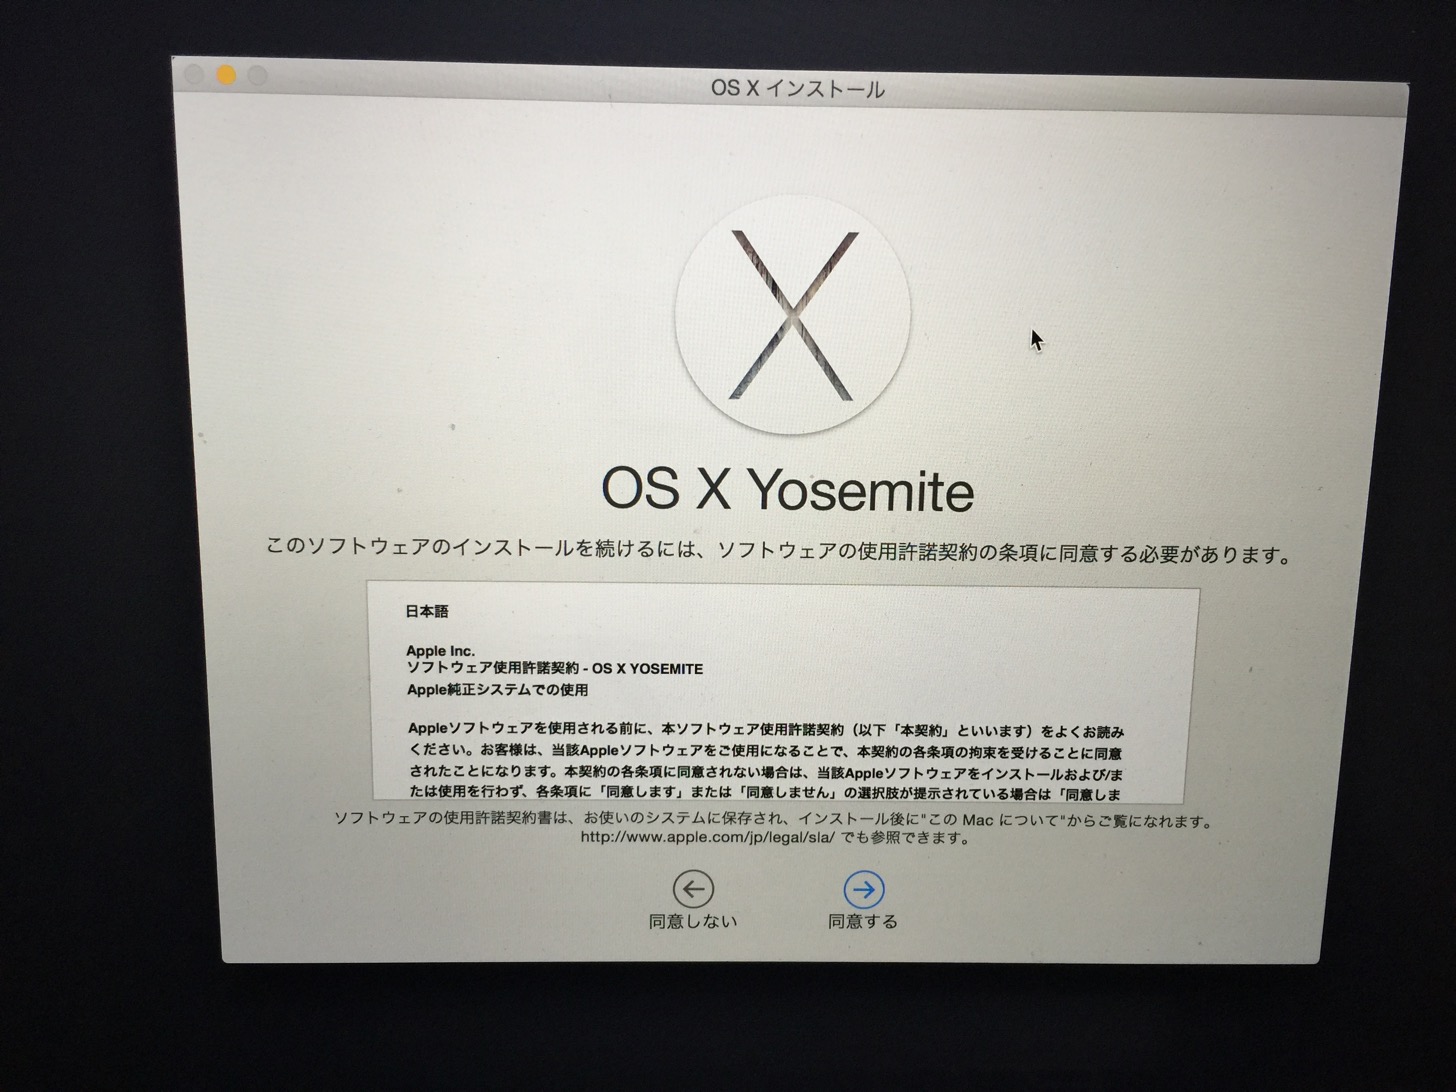 OS X Yosemite。このソフトウェアのインストールを続けるには、ソフトウェアの使用許諾契約の条項に同意する必要があります。